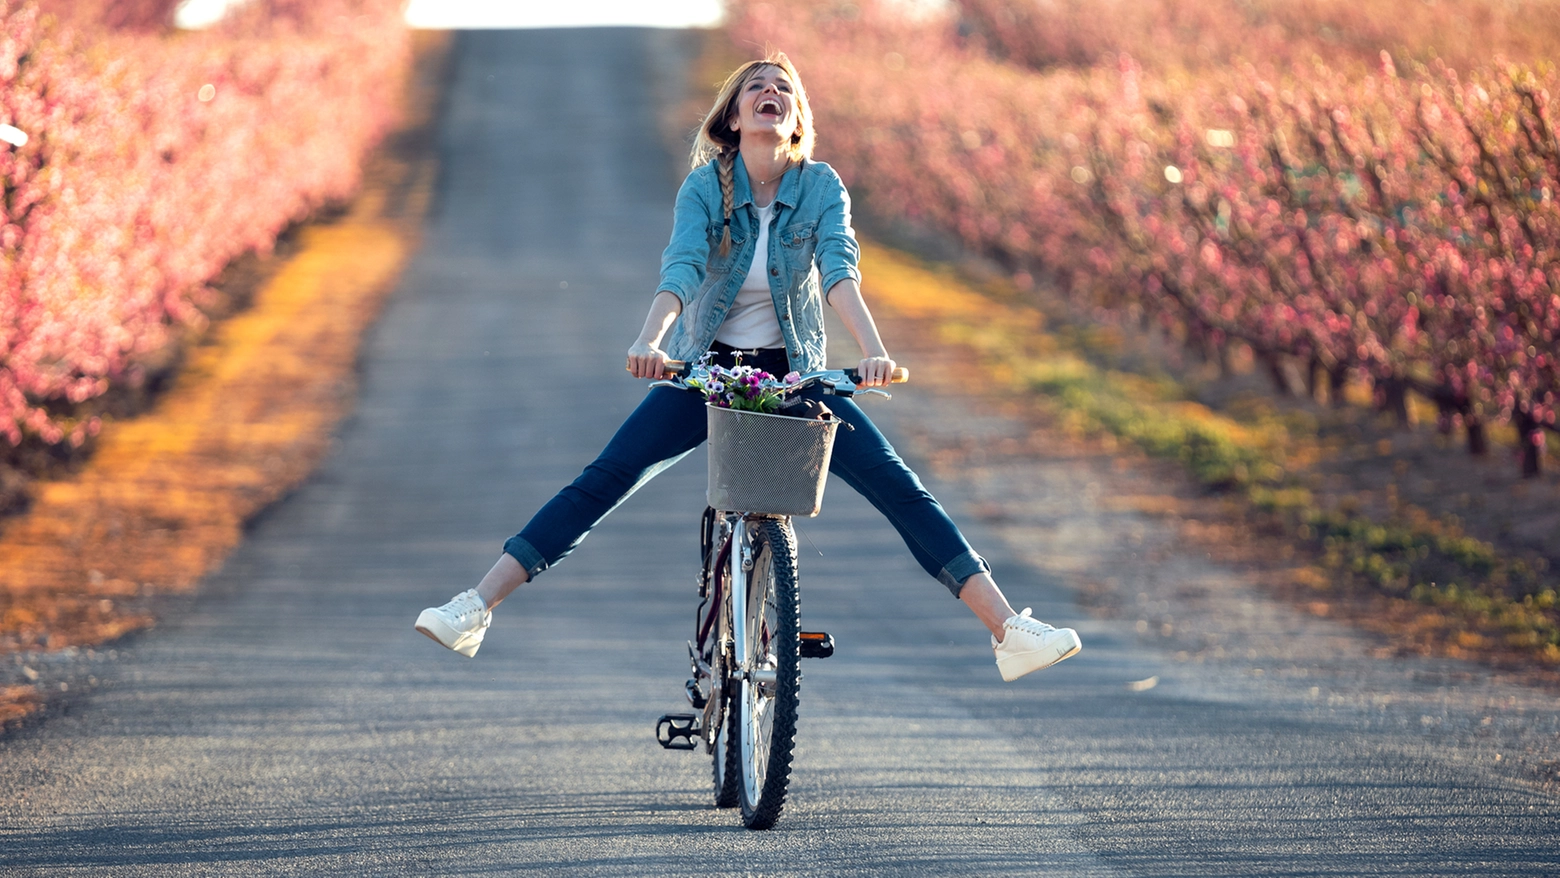 Andare in bici mette allegria, ma quali sono le regole della strada da seguire?